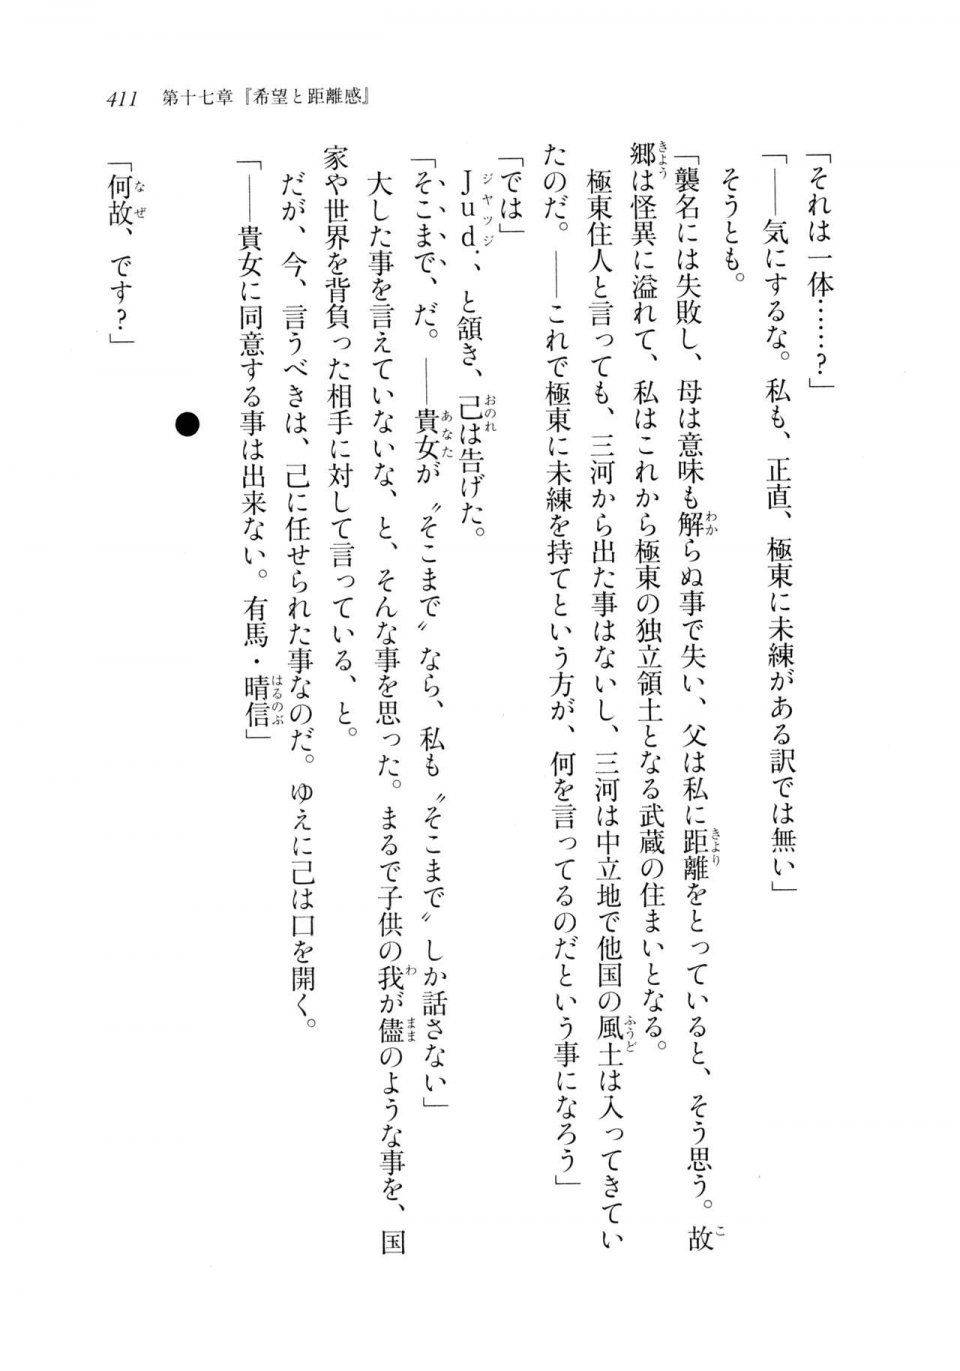 Kyoukai Senjou no Horizon LN Sidestory Vol 2 - Photo #409